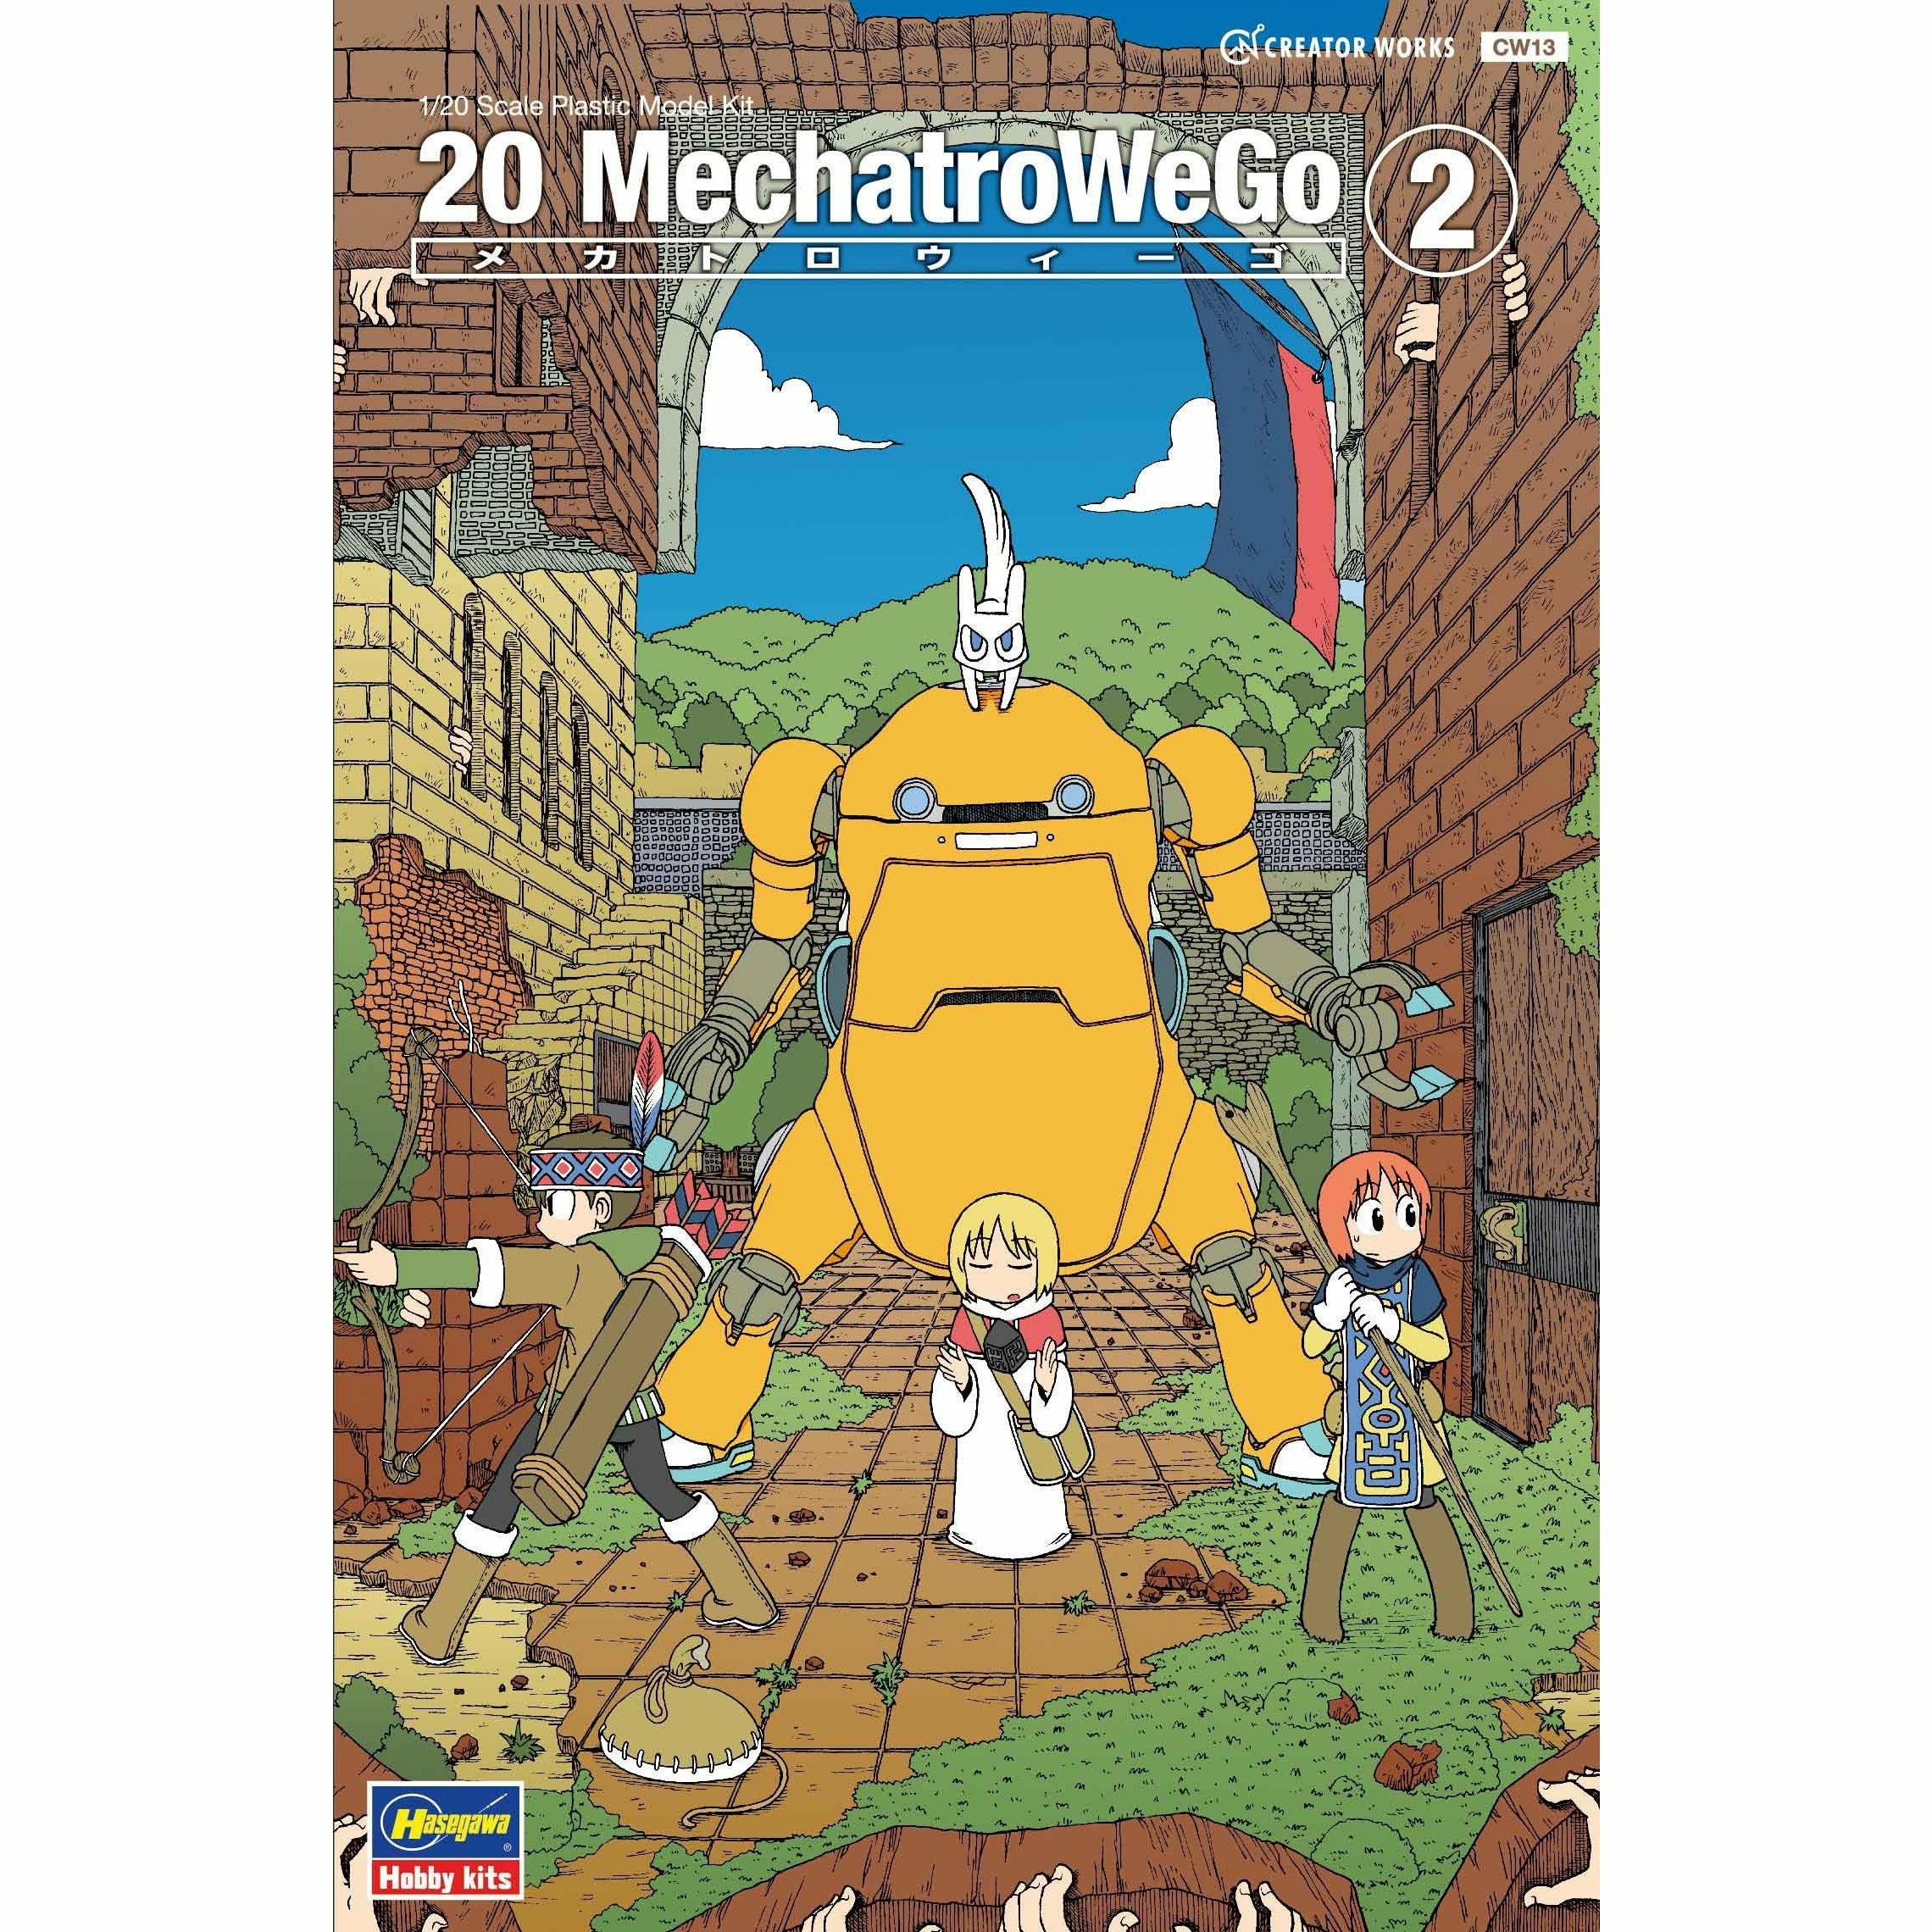 MechatroWeGo No.02 Orange 1/20 #64513 by Hasegawa